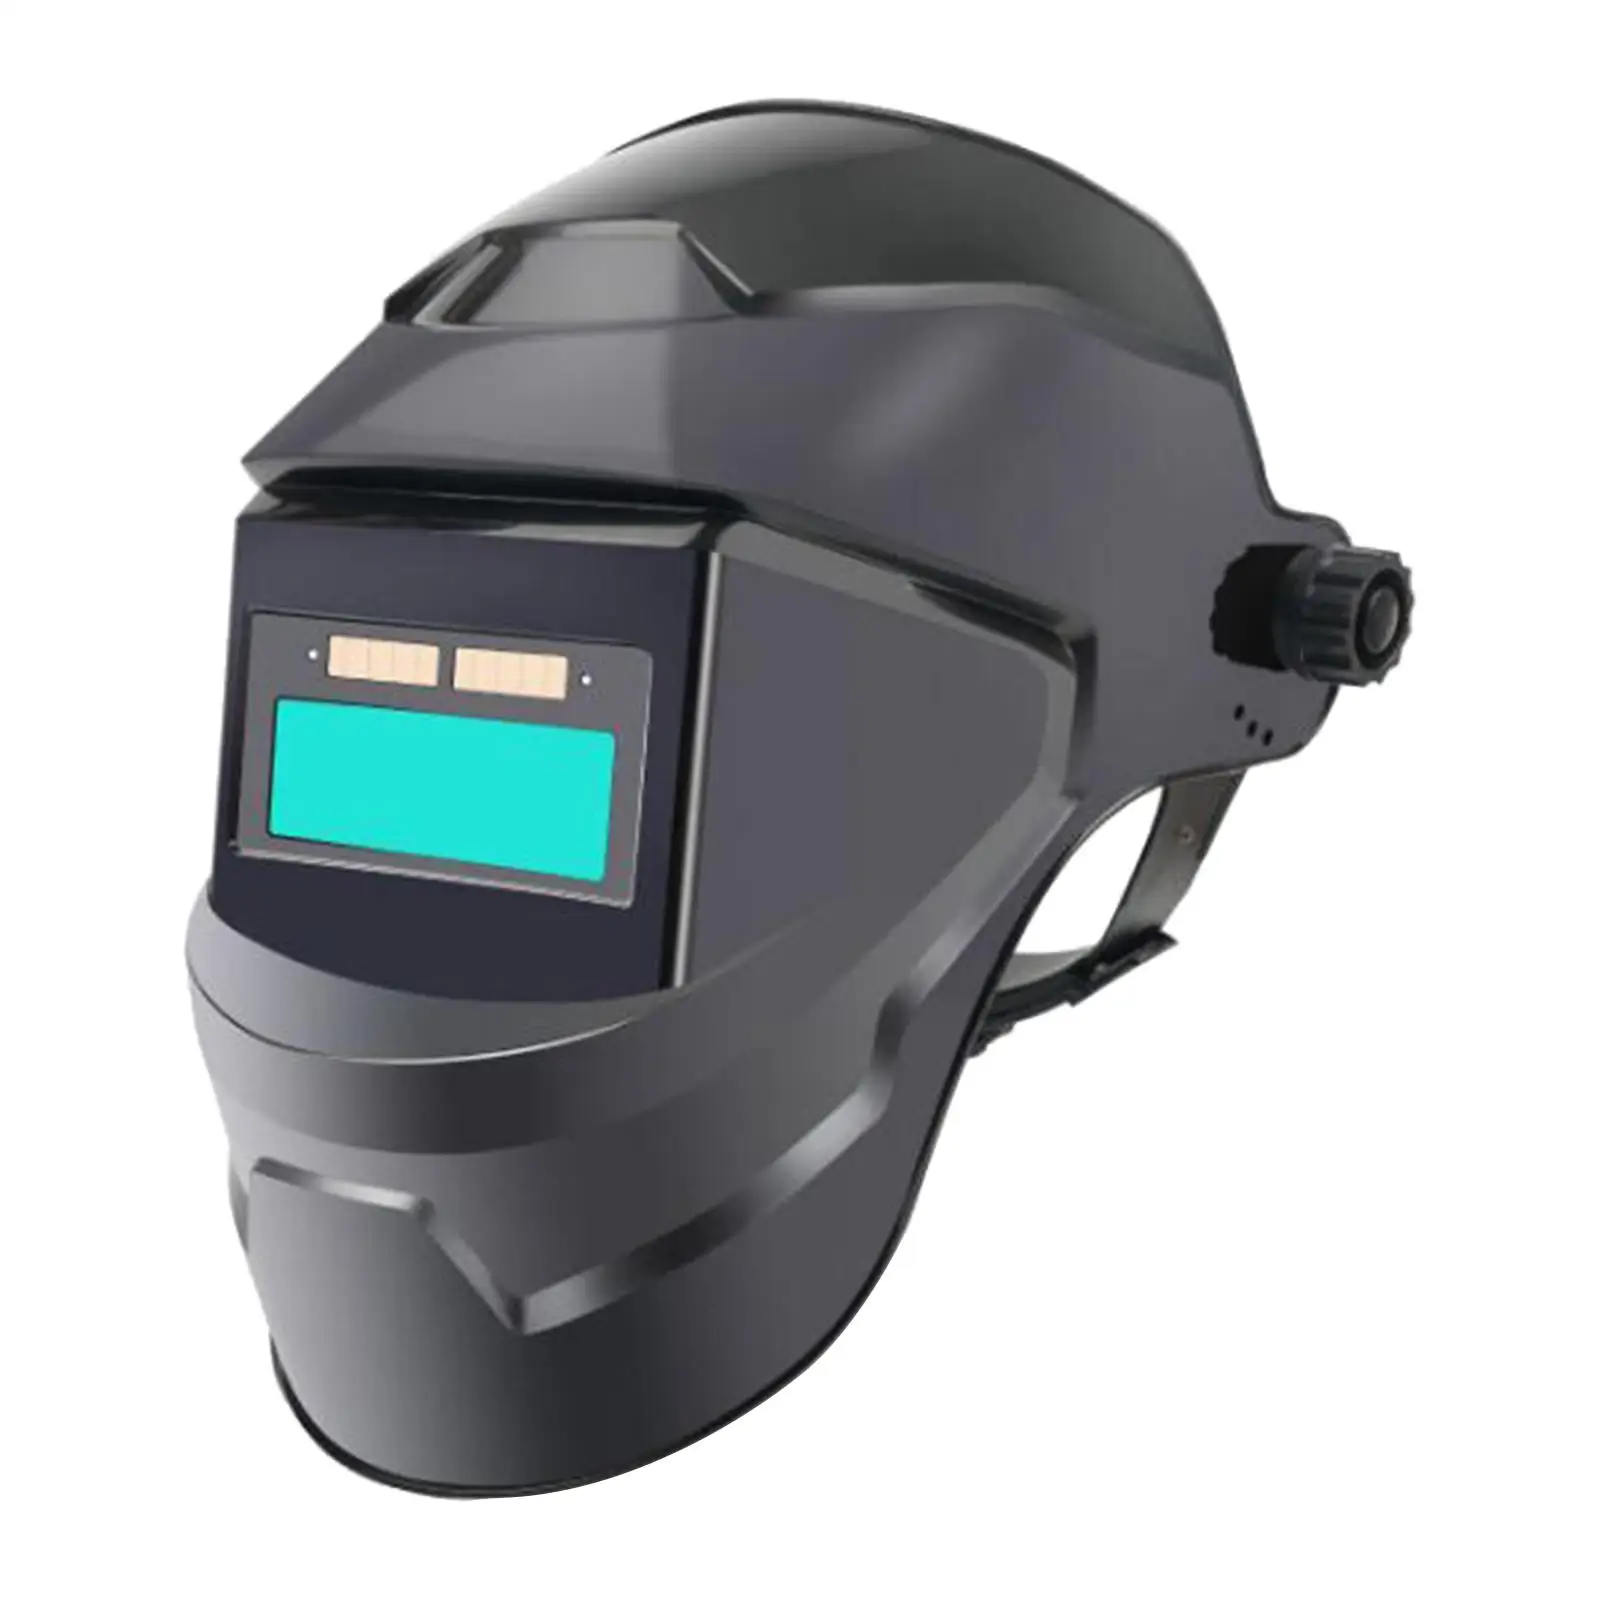 Electrical Welding Caps Thickened Forehead Sponge Mask Welder Helmet Welding Accessories Welding for Weld Grind Cut